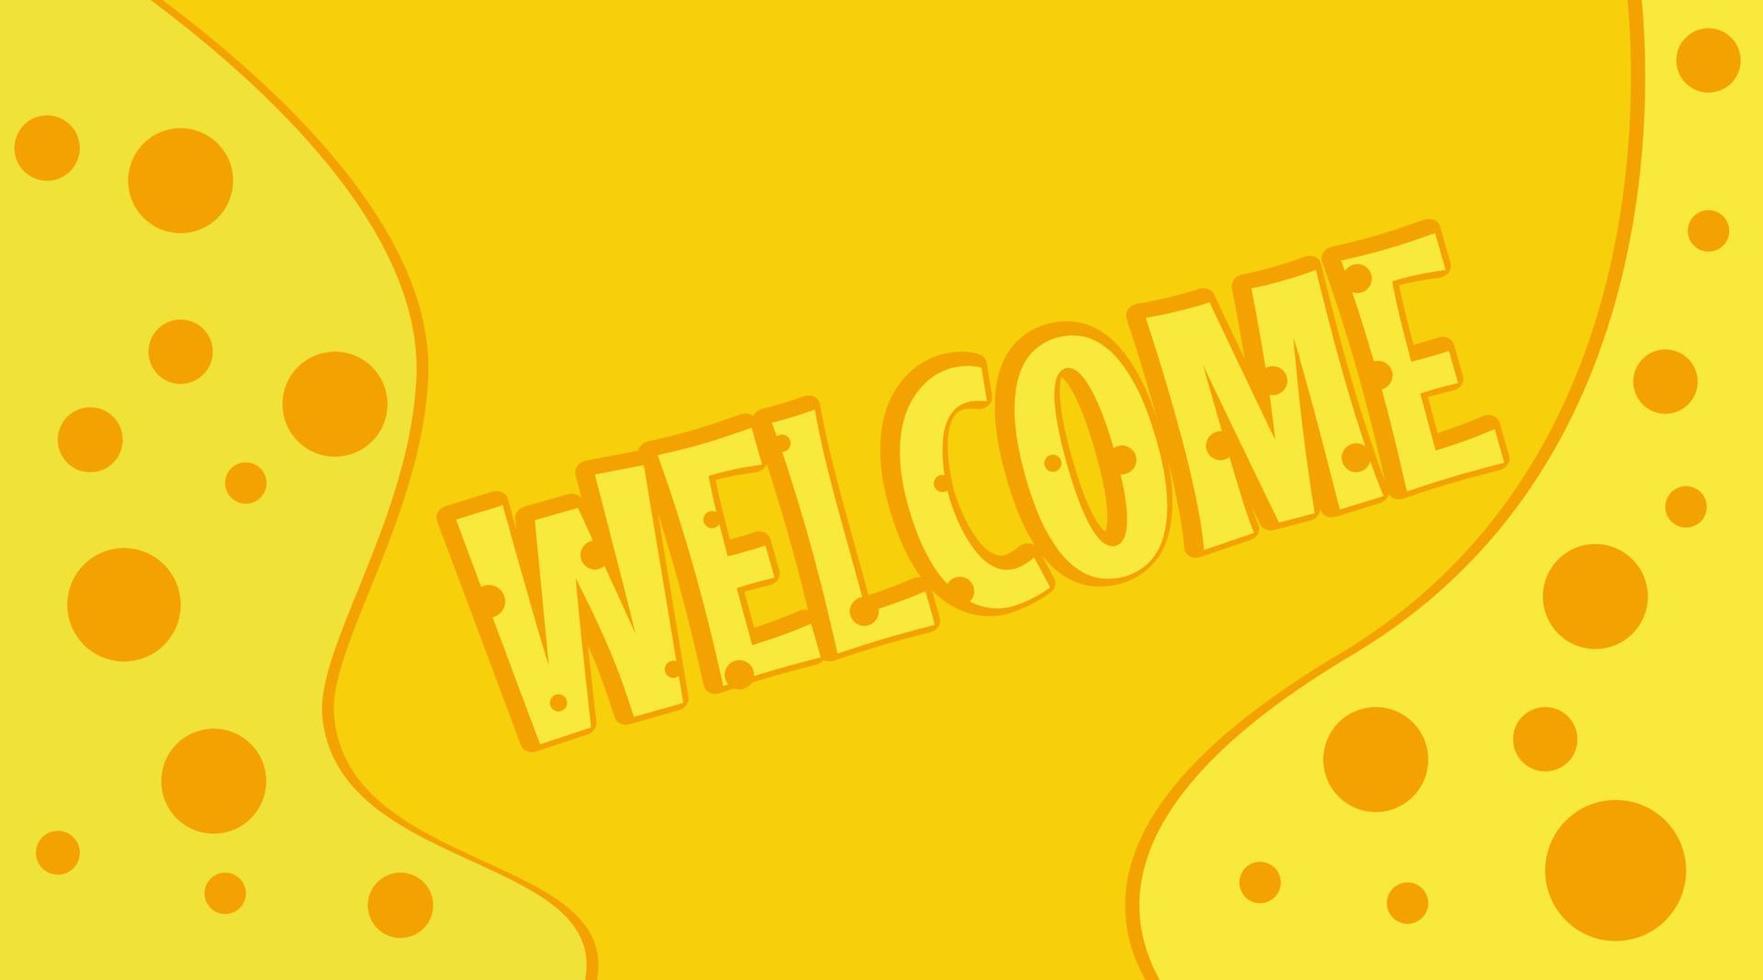 design semplice, banner di benvenuto, giallo e arancione vettore